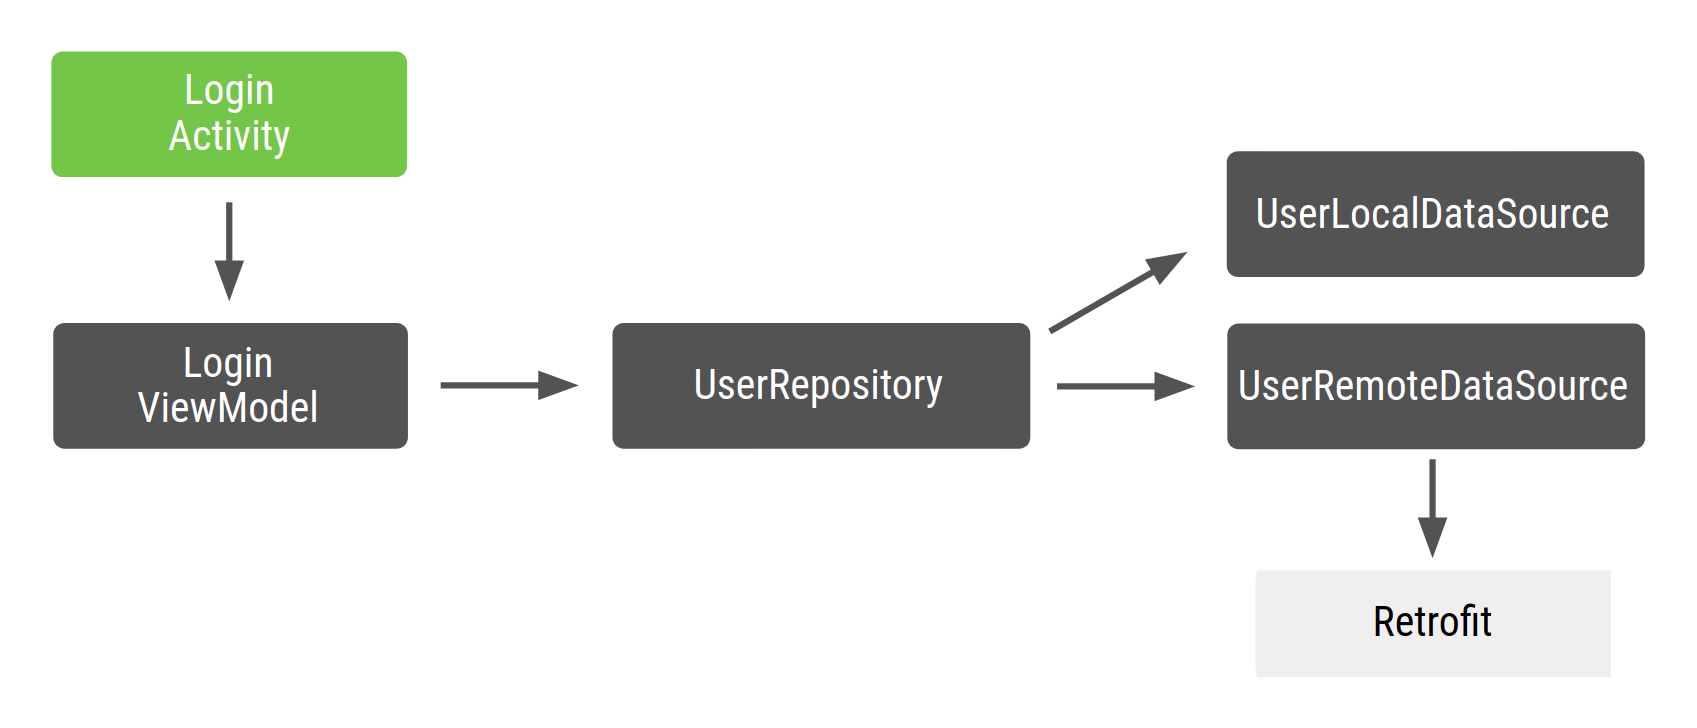 „LoginActivity“ hängt von der Funktion „LoginViewModel“ ab, die vom UserRepository abhängig ist, das wiederum von UserLocalDataSource und UserRemoteDataSource abhängt, die wiederum von Retrofit abhängig sind.